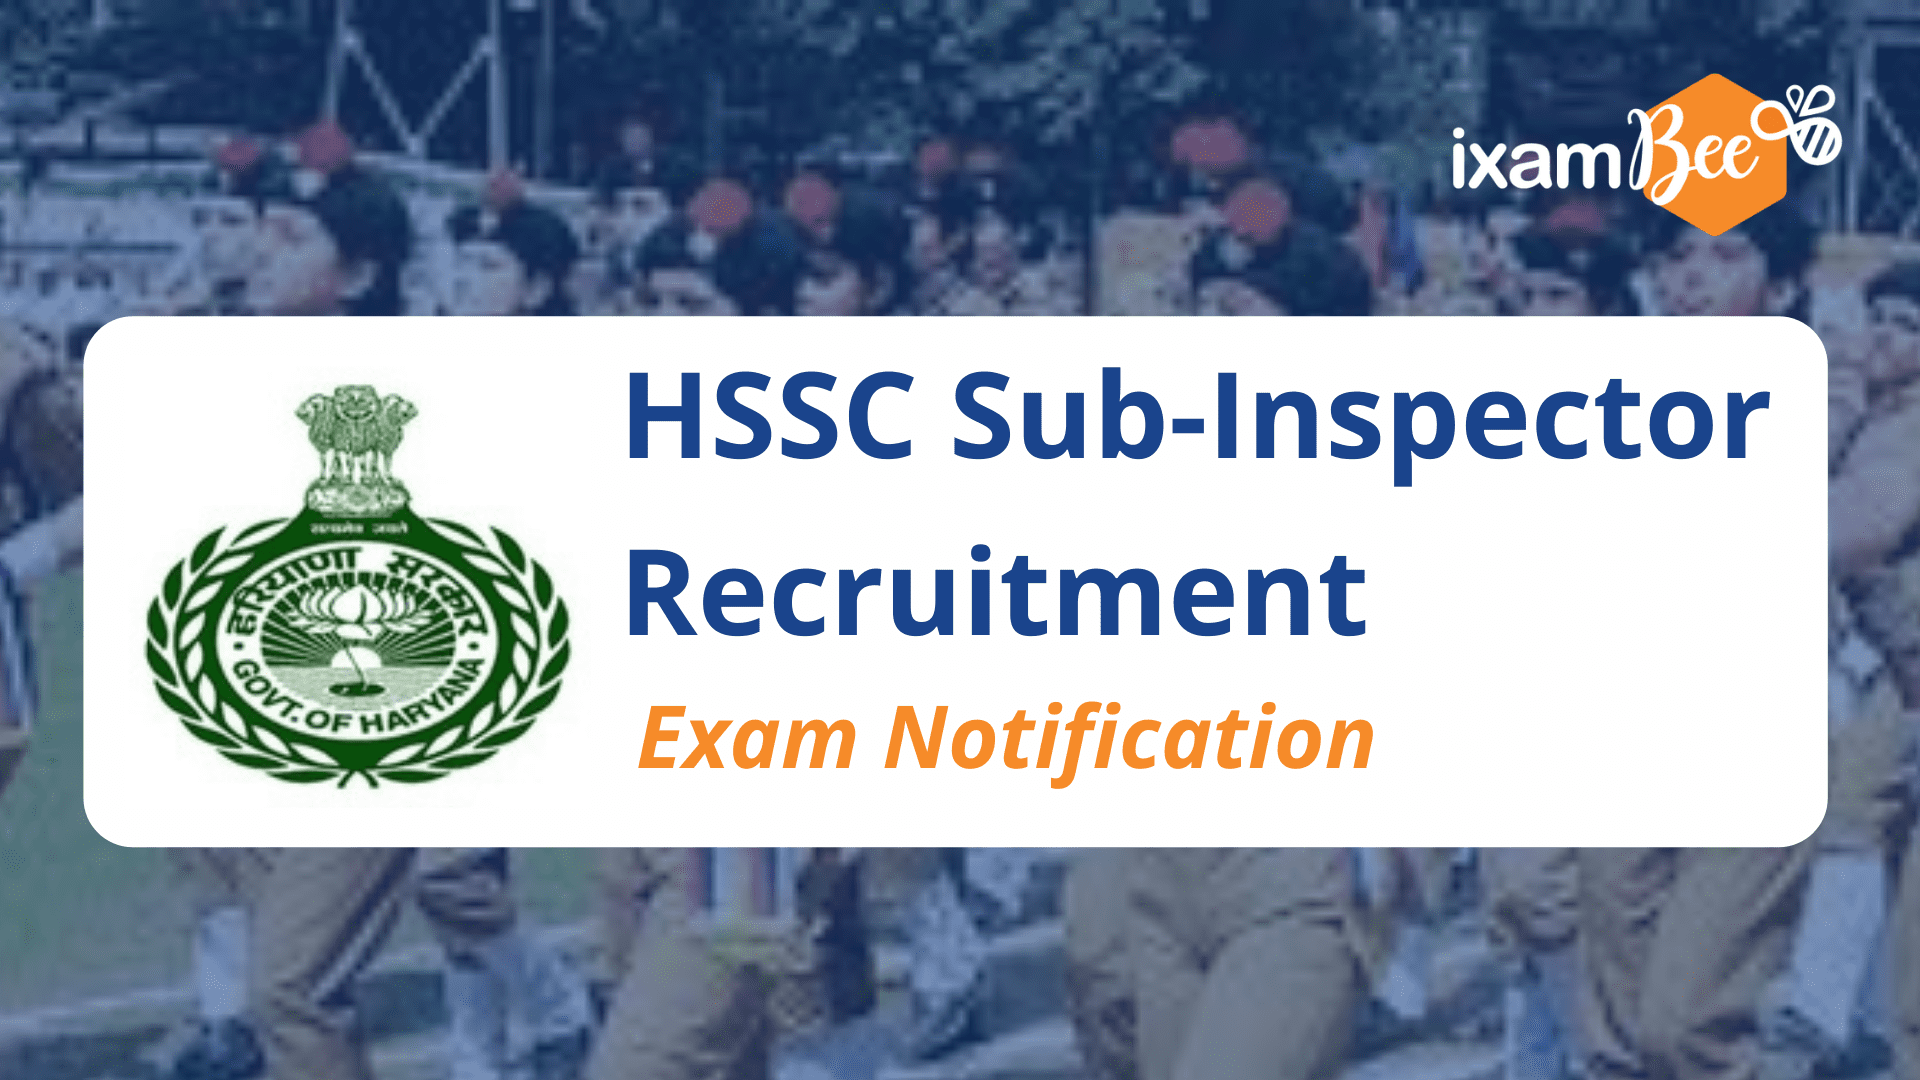 HSSC Sub-Inspector Recruitment Notification